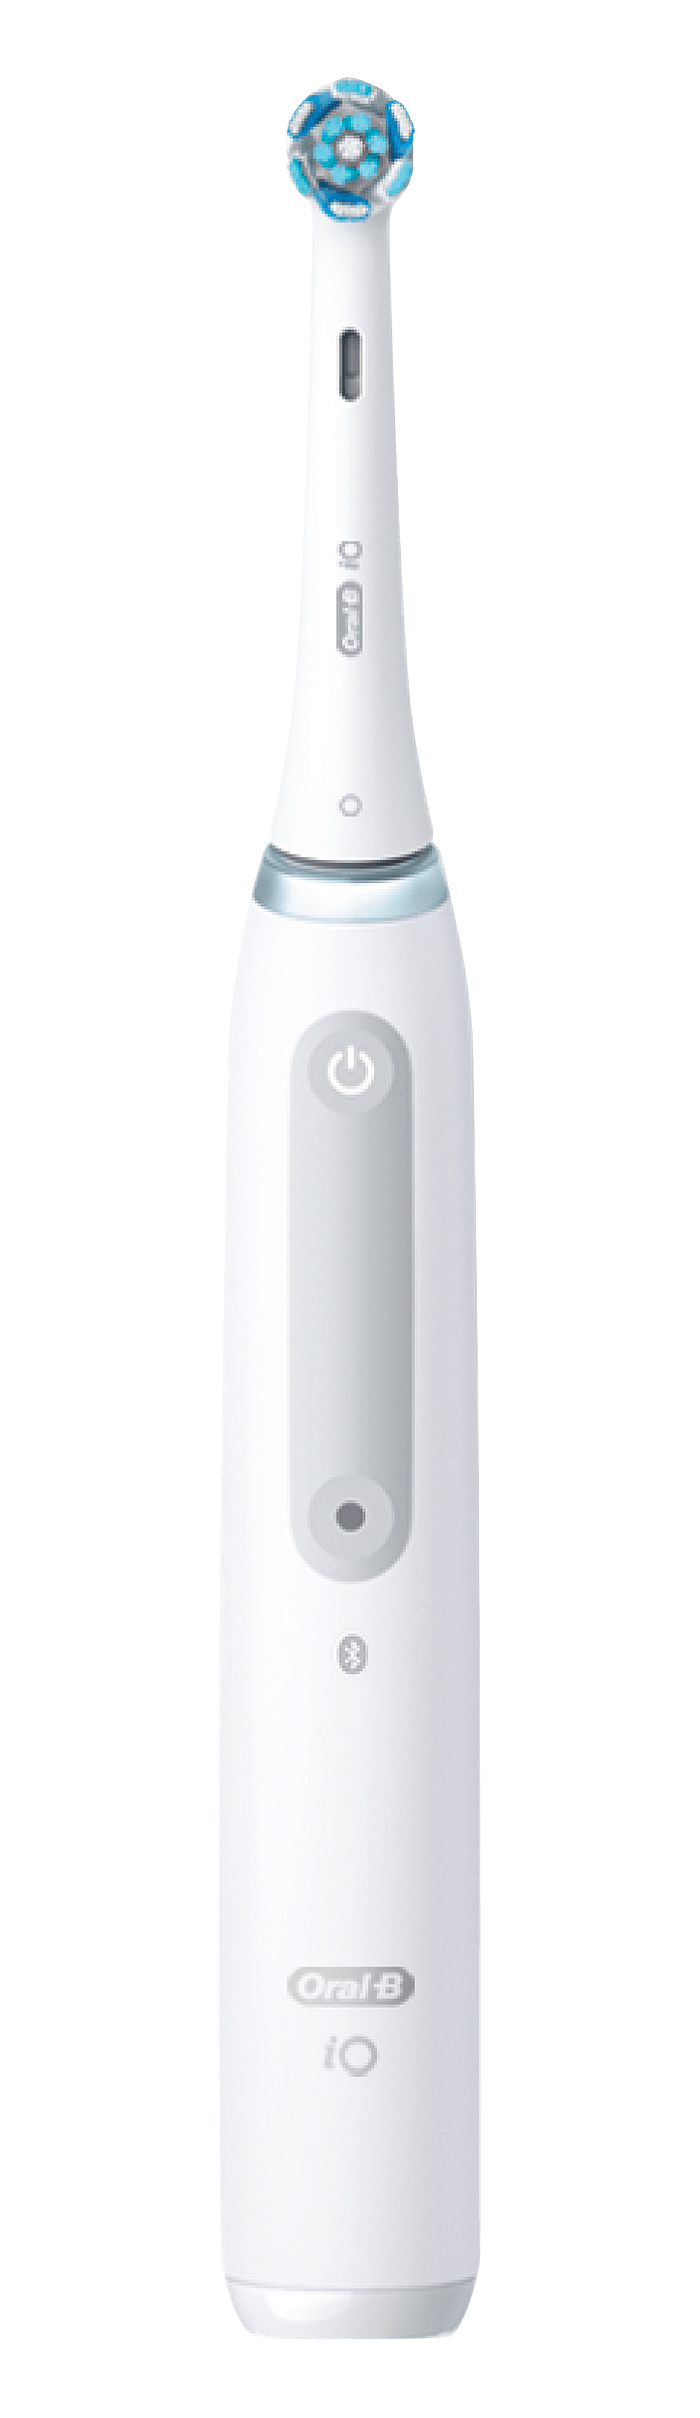 オーラルoral-B iO4電動歯ブラシ 『 替ブラシ3本入り 』 歯科専売品ハブラシ